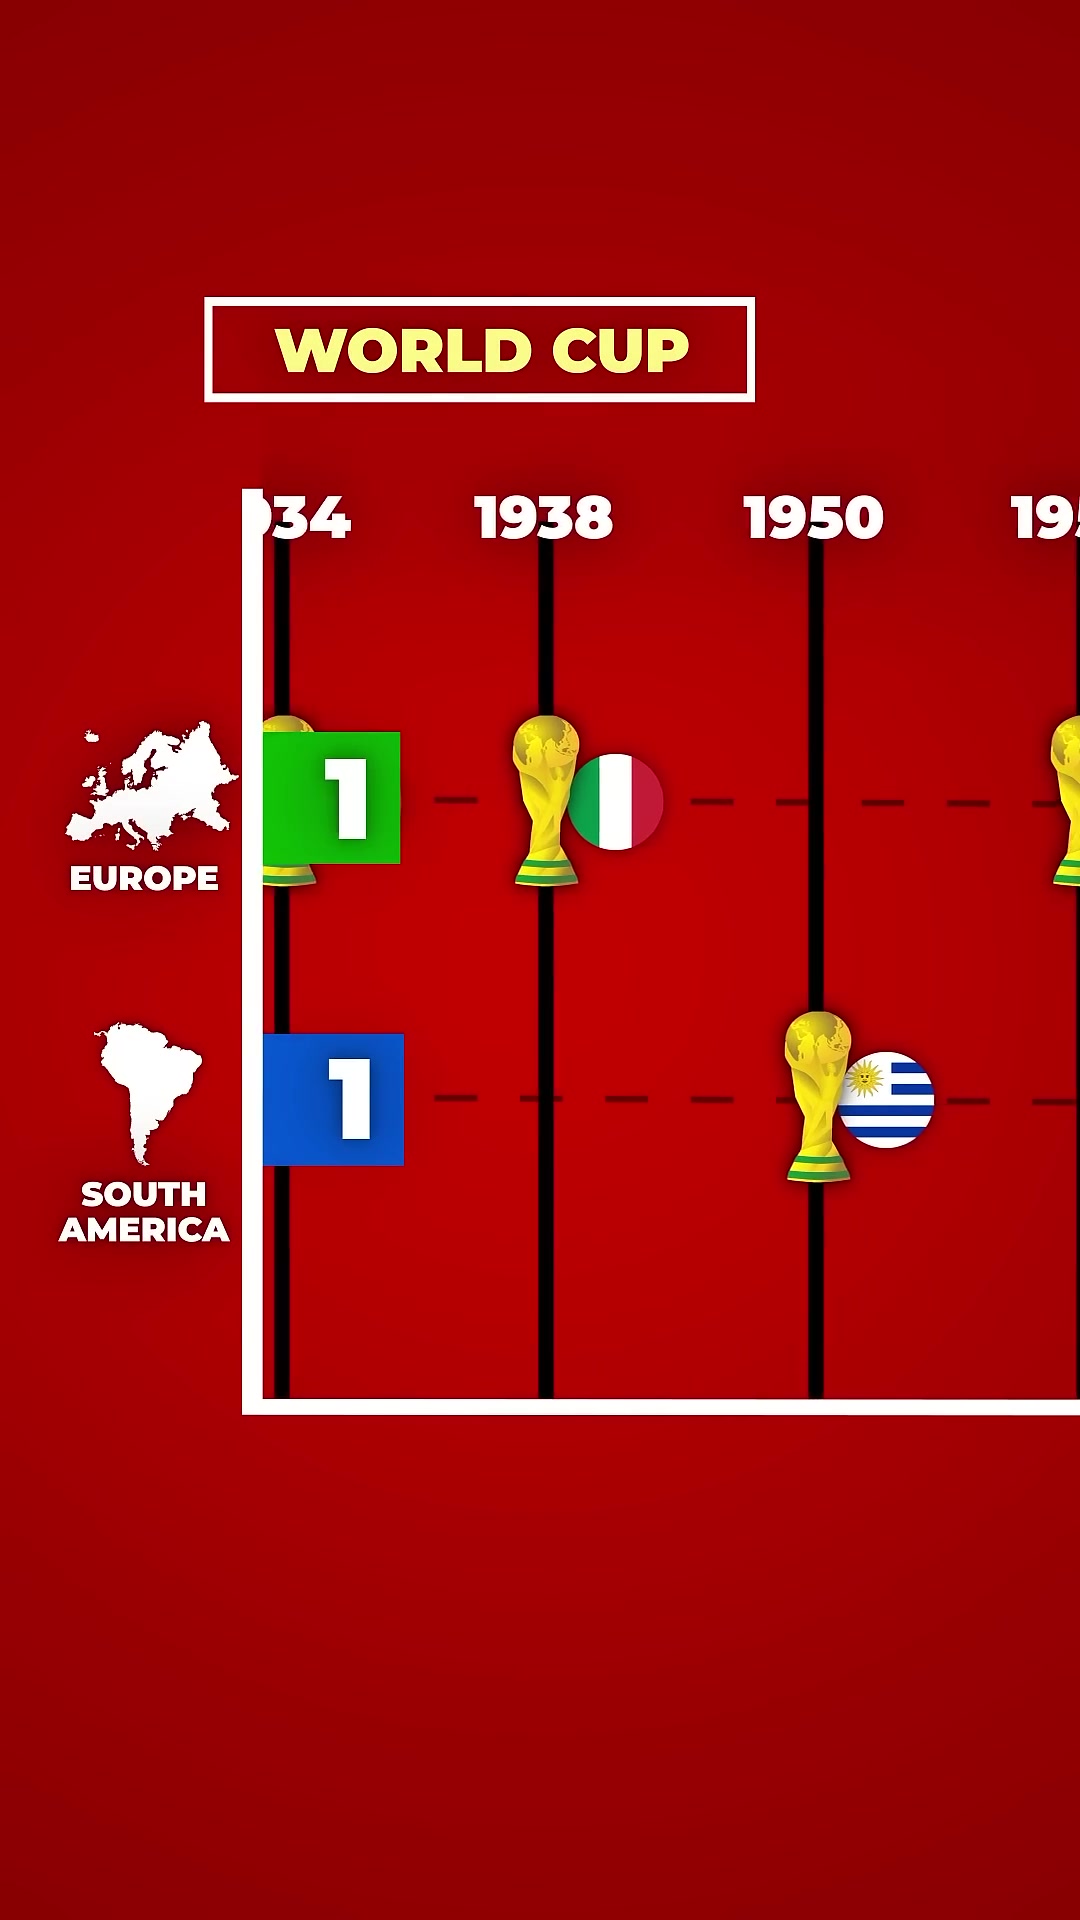 欧洲vs南美洲，两大洲的世界杯夺冠次数对决！